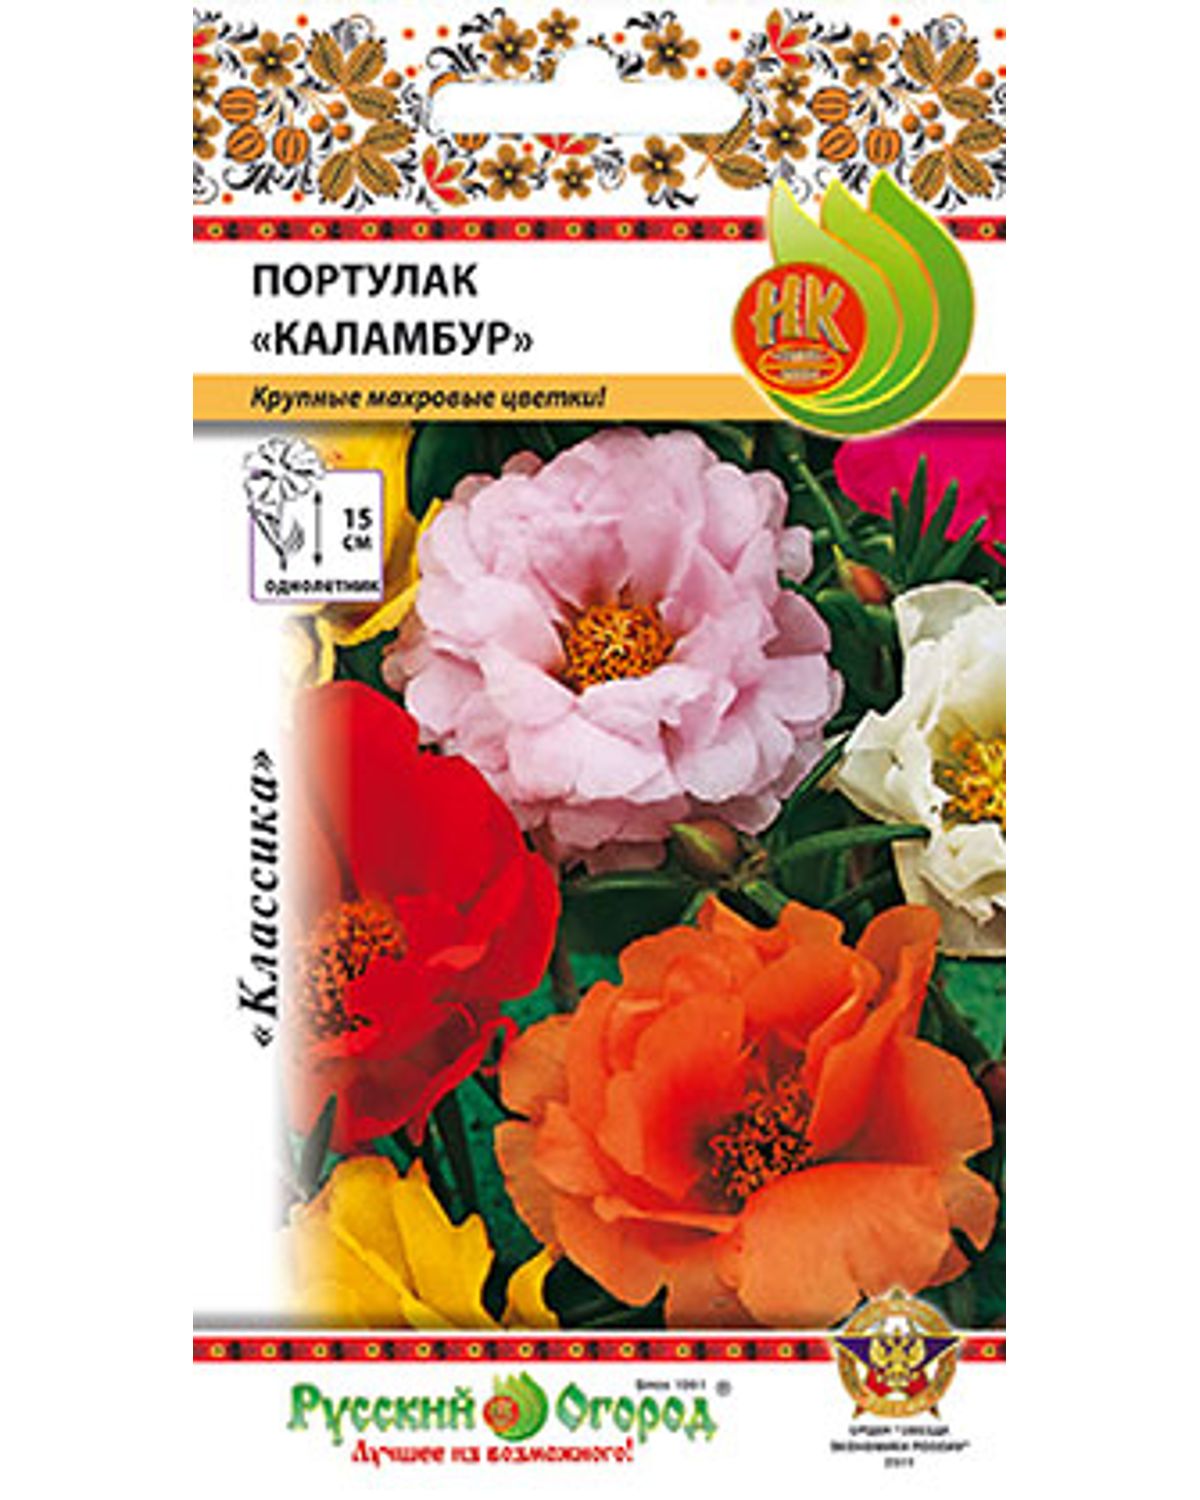 Семена портулак Русский огород Каламбур 703313 1 уп. - отзывы покупателей  на Мегамаркет